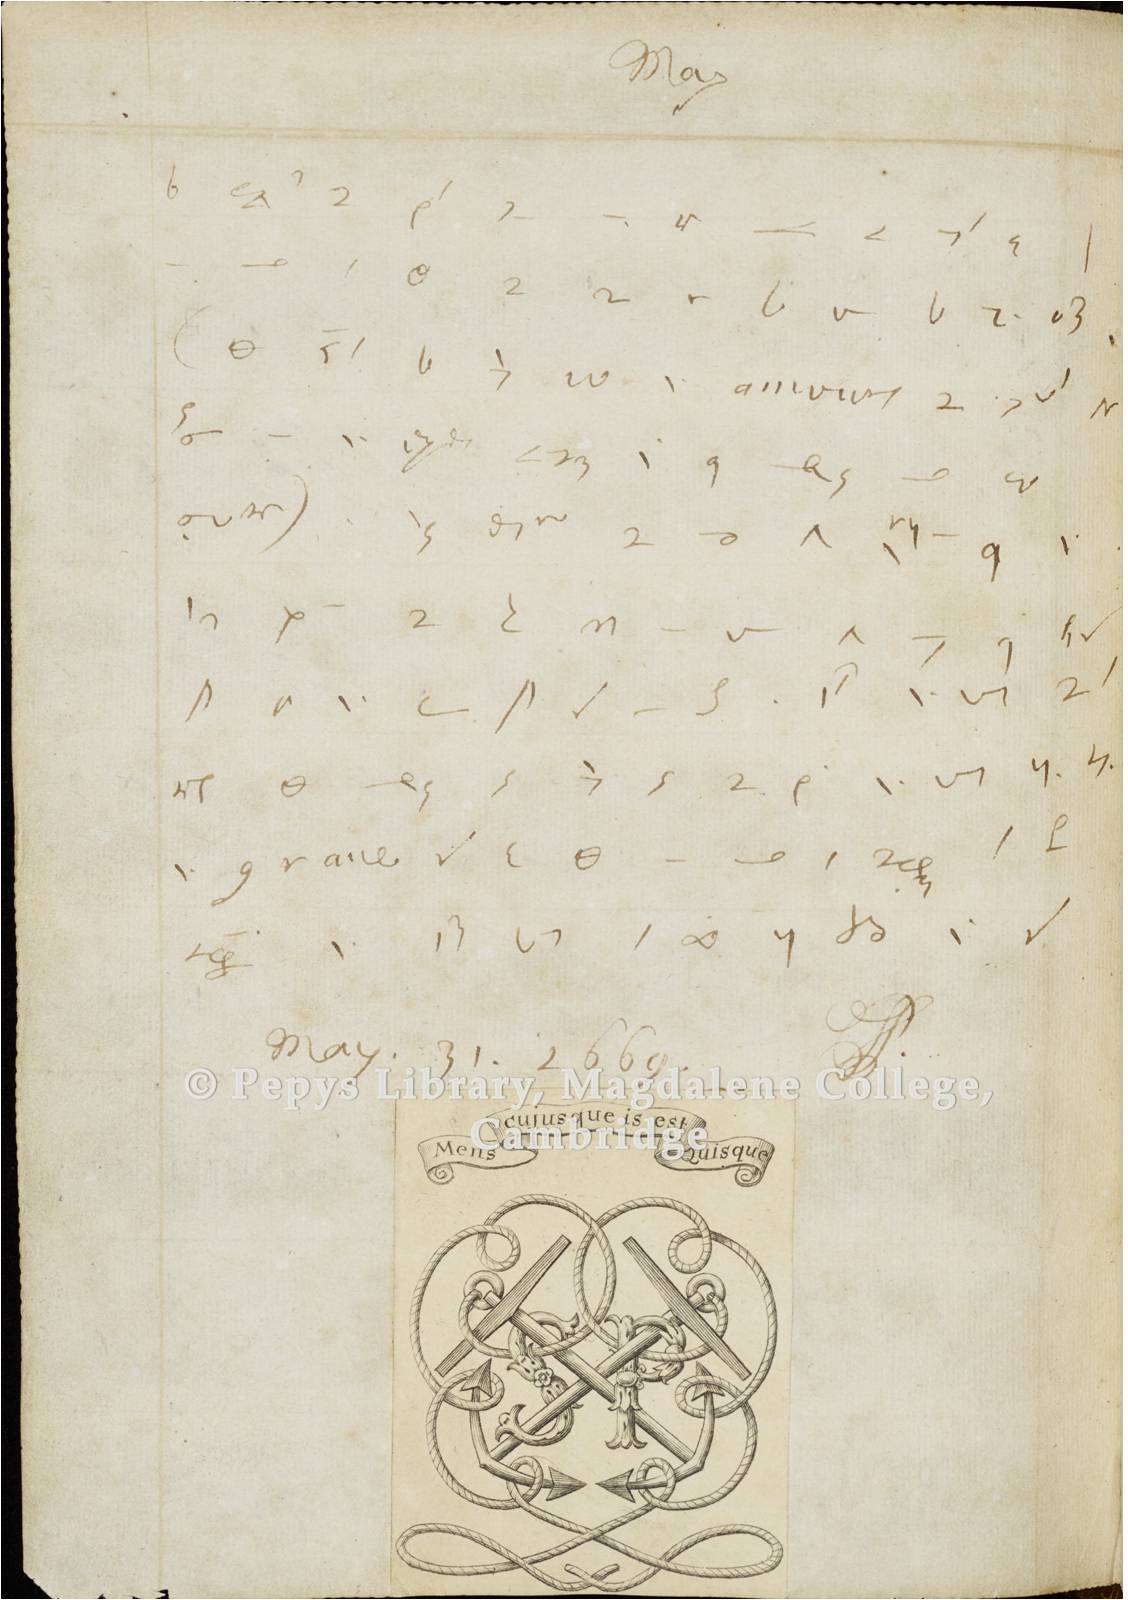 Item 4: Manuscript: The Closing of Samuel Pepys’s Diary, 31st May 1669